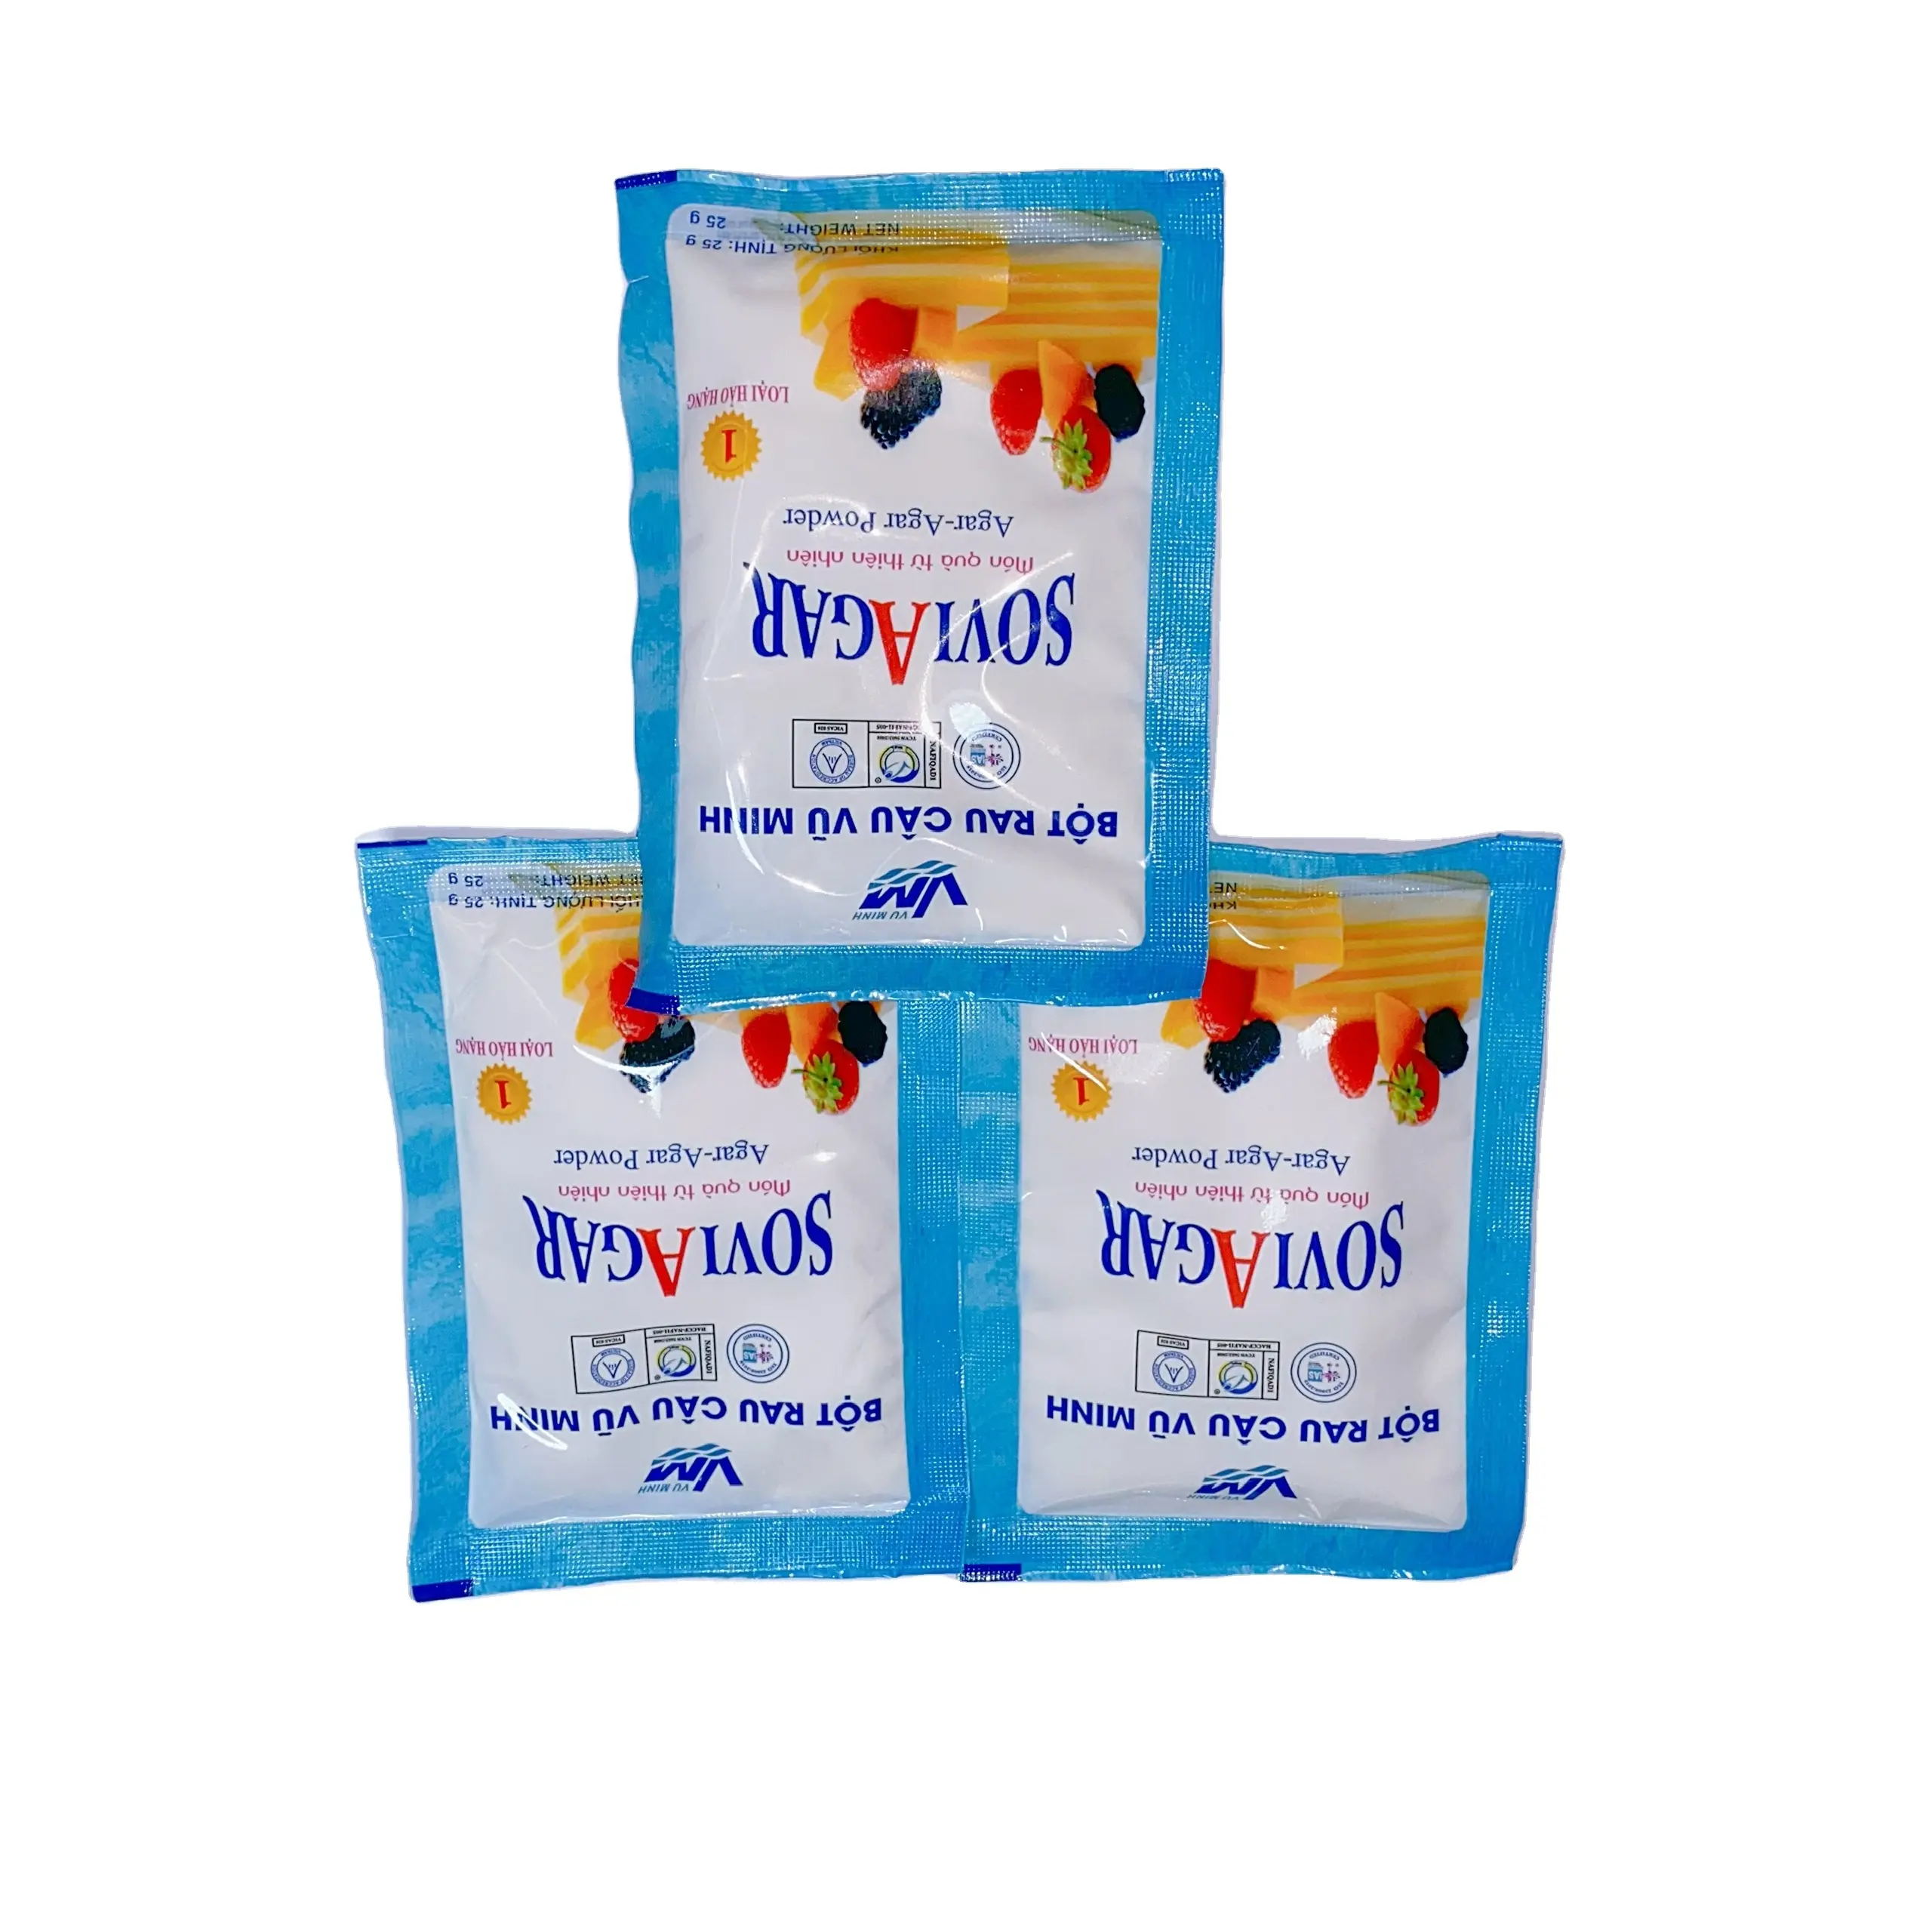 モロッコパウダーアガー最高品質菓子に使用する防腐剤なしISO認証包装カートンPEバッグ & PPバッグ